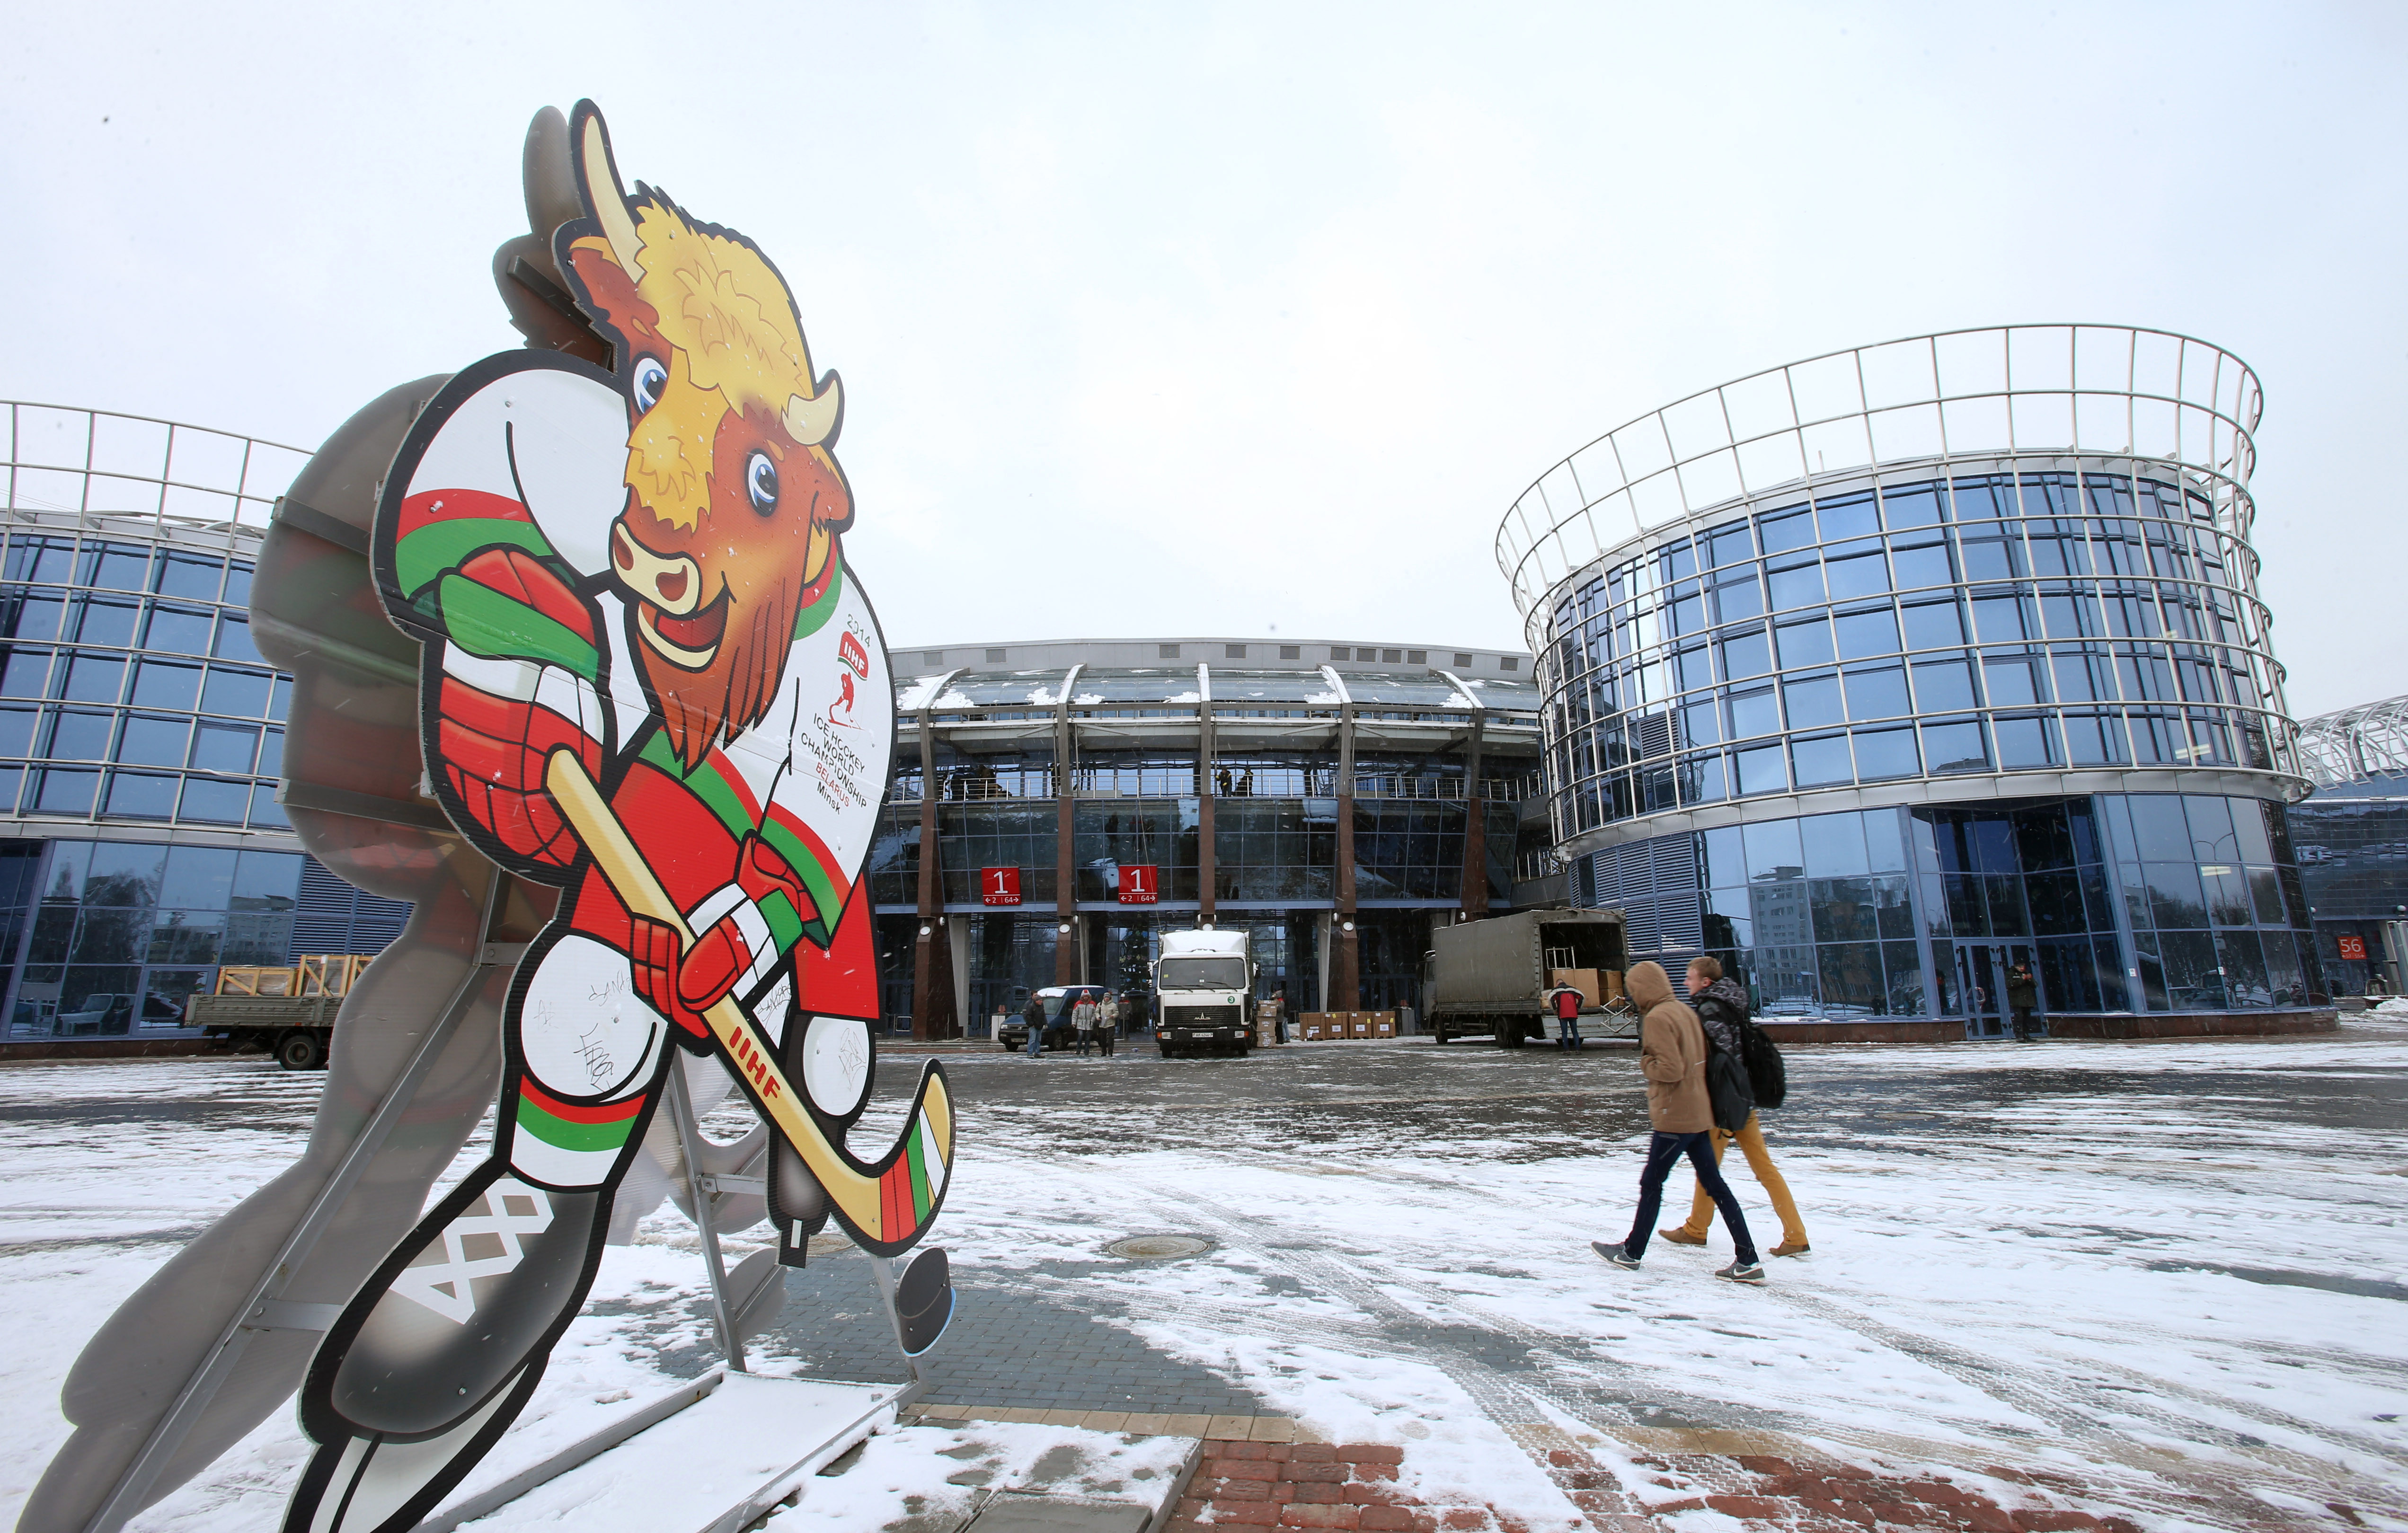 Спортивный комплекс "Чижовка-Арена" в Минске, в котором в 2014 году проходил Чемпионат мира по хоккею среди мужчин. Фото: &copy; РИА Новости/Егор Еремов